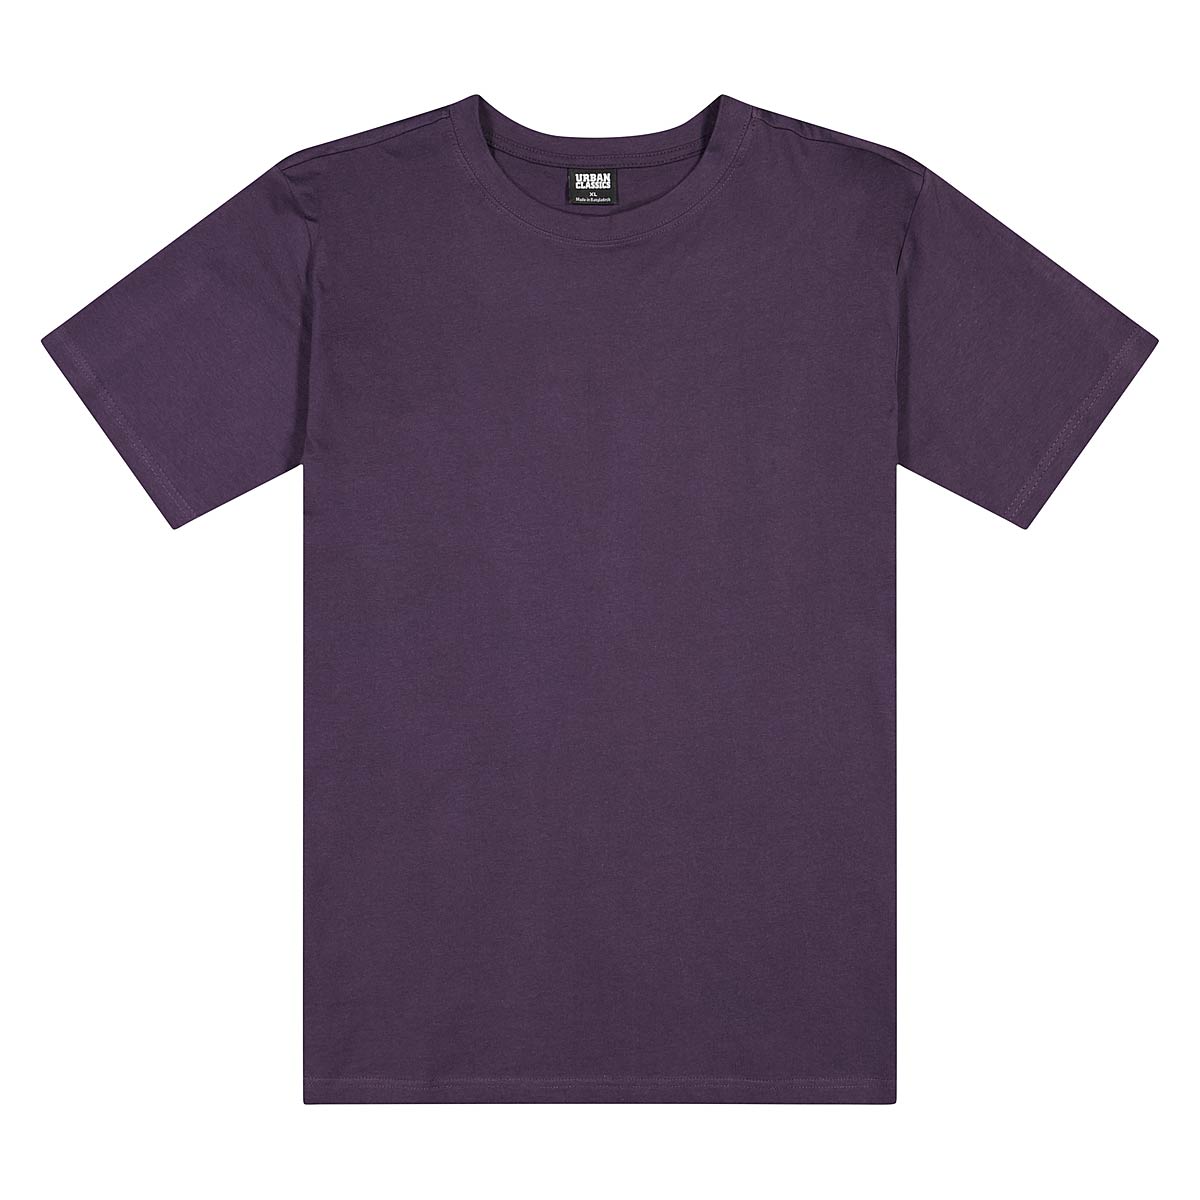 Urban Classics Tall T-Shirt, Purplenight